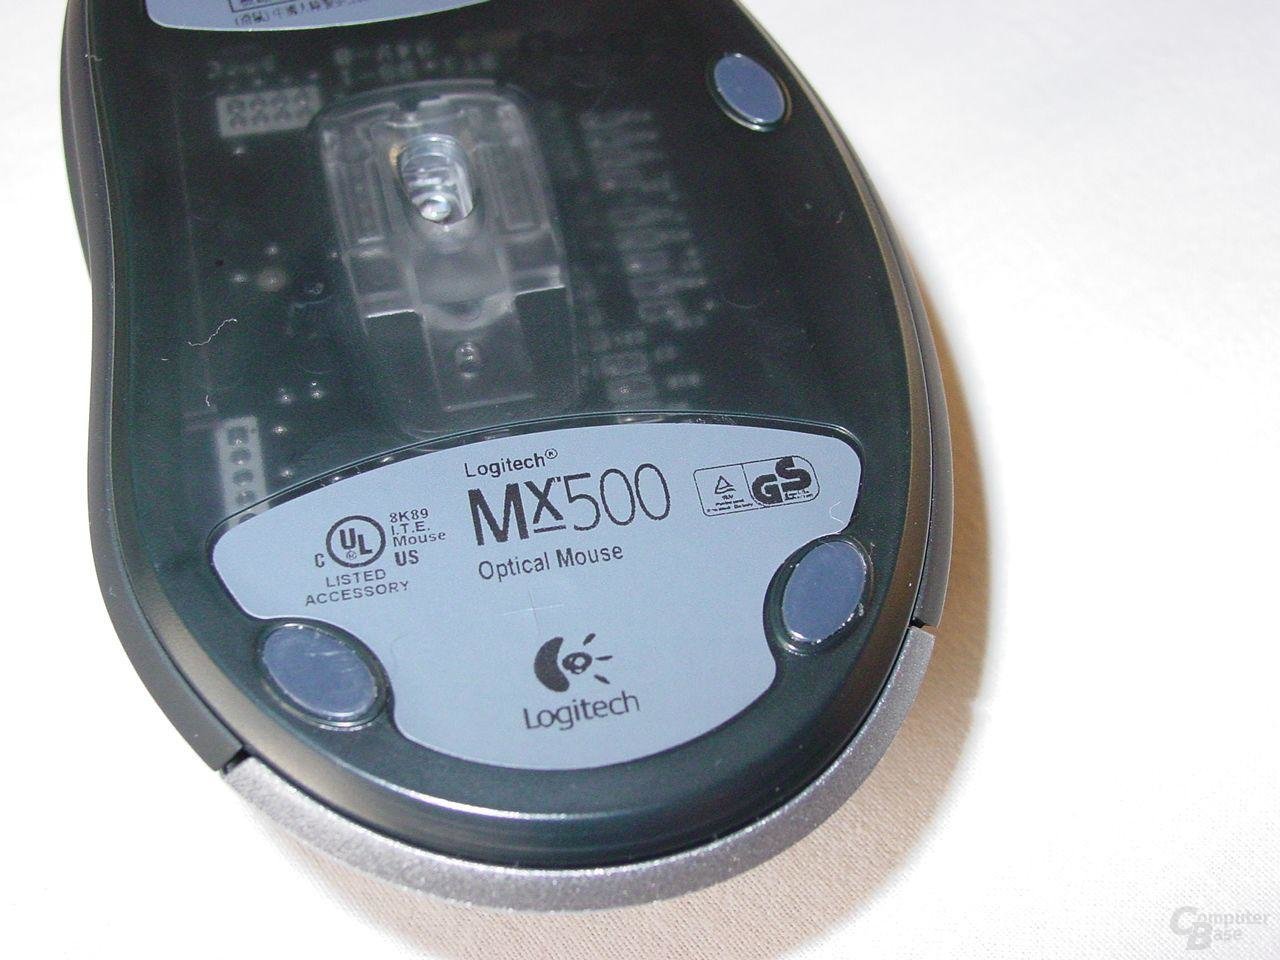 MX500 nochmal von Unten